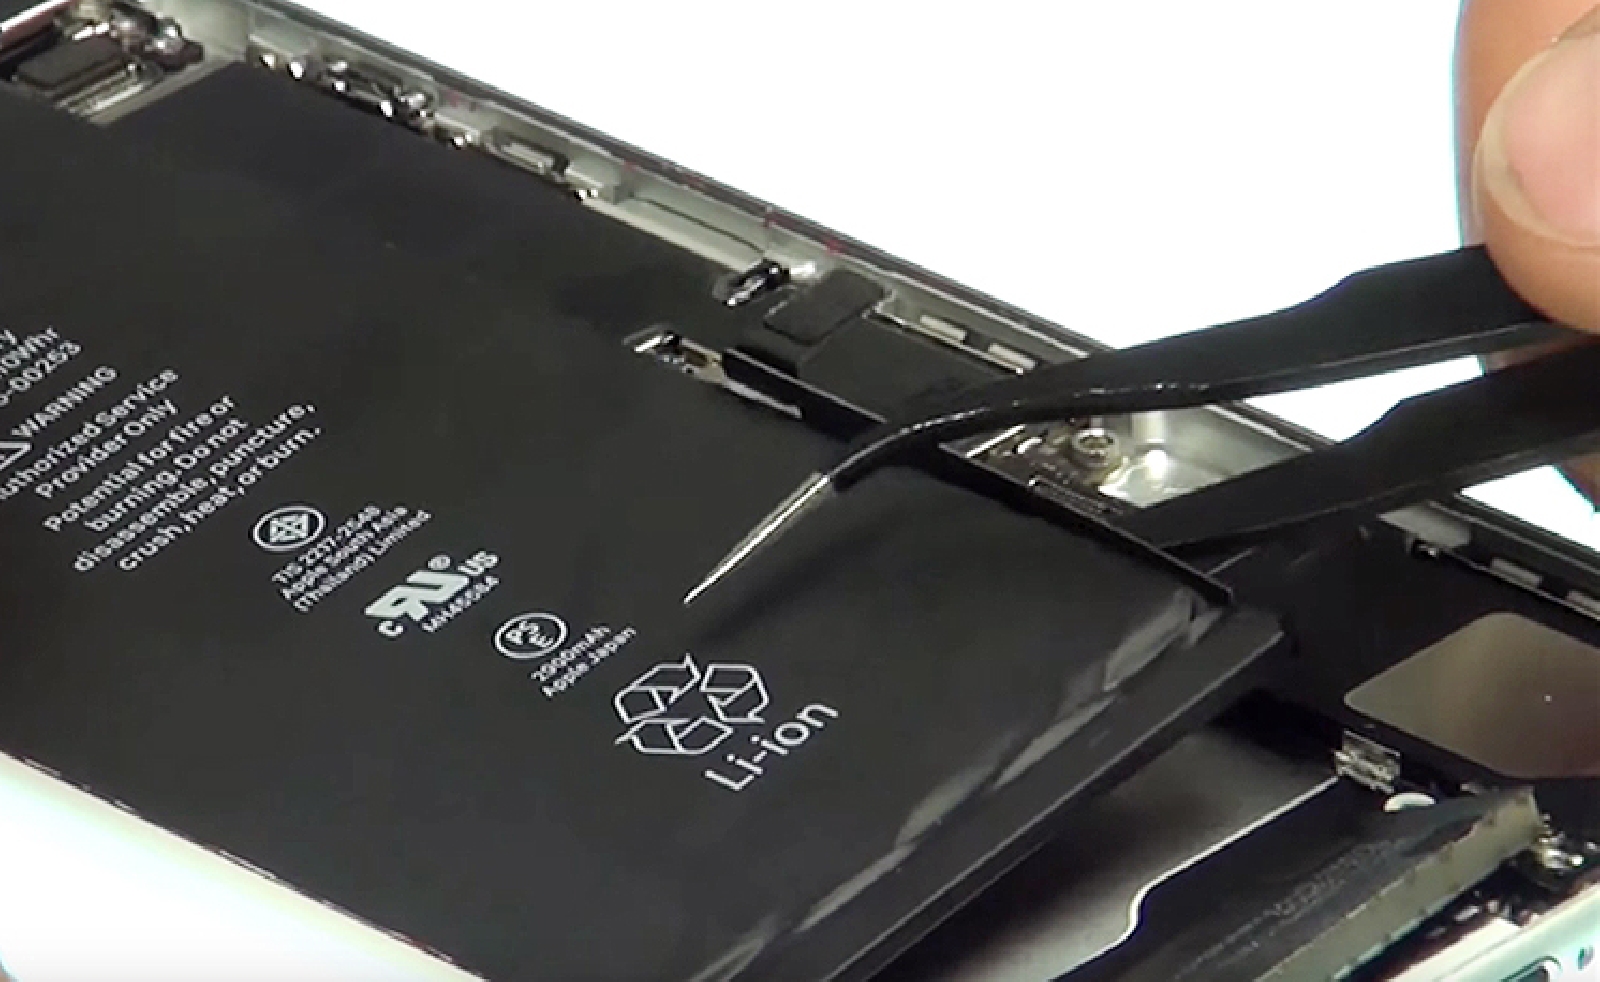 Tutoriel iPhone 7 (HD) : remplacer la batterie 